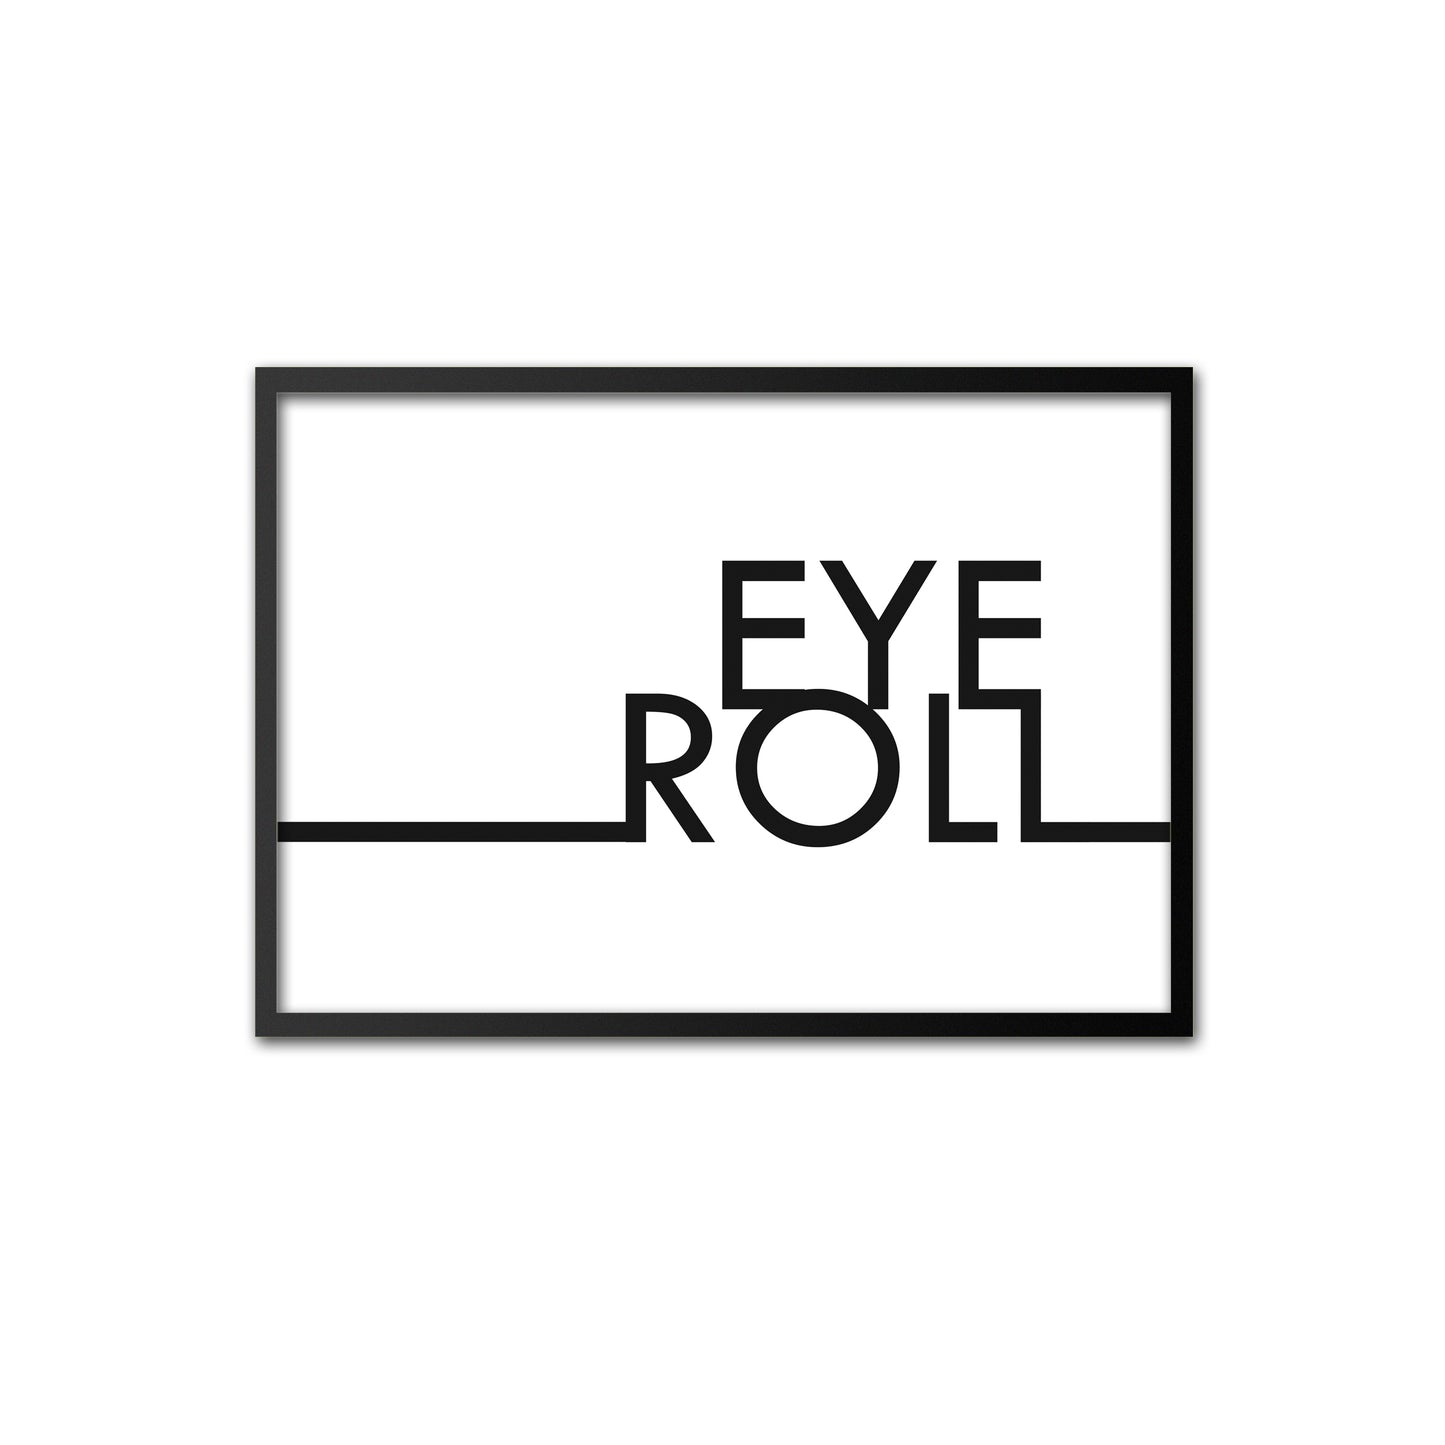 Eye Roll - black on white